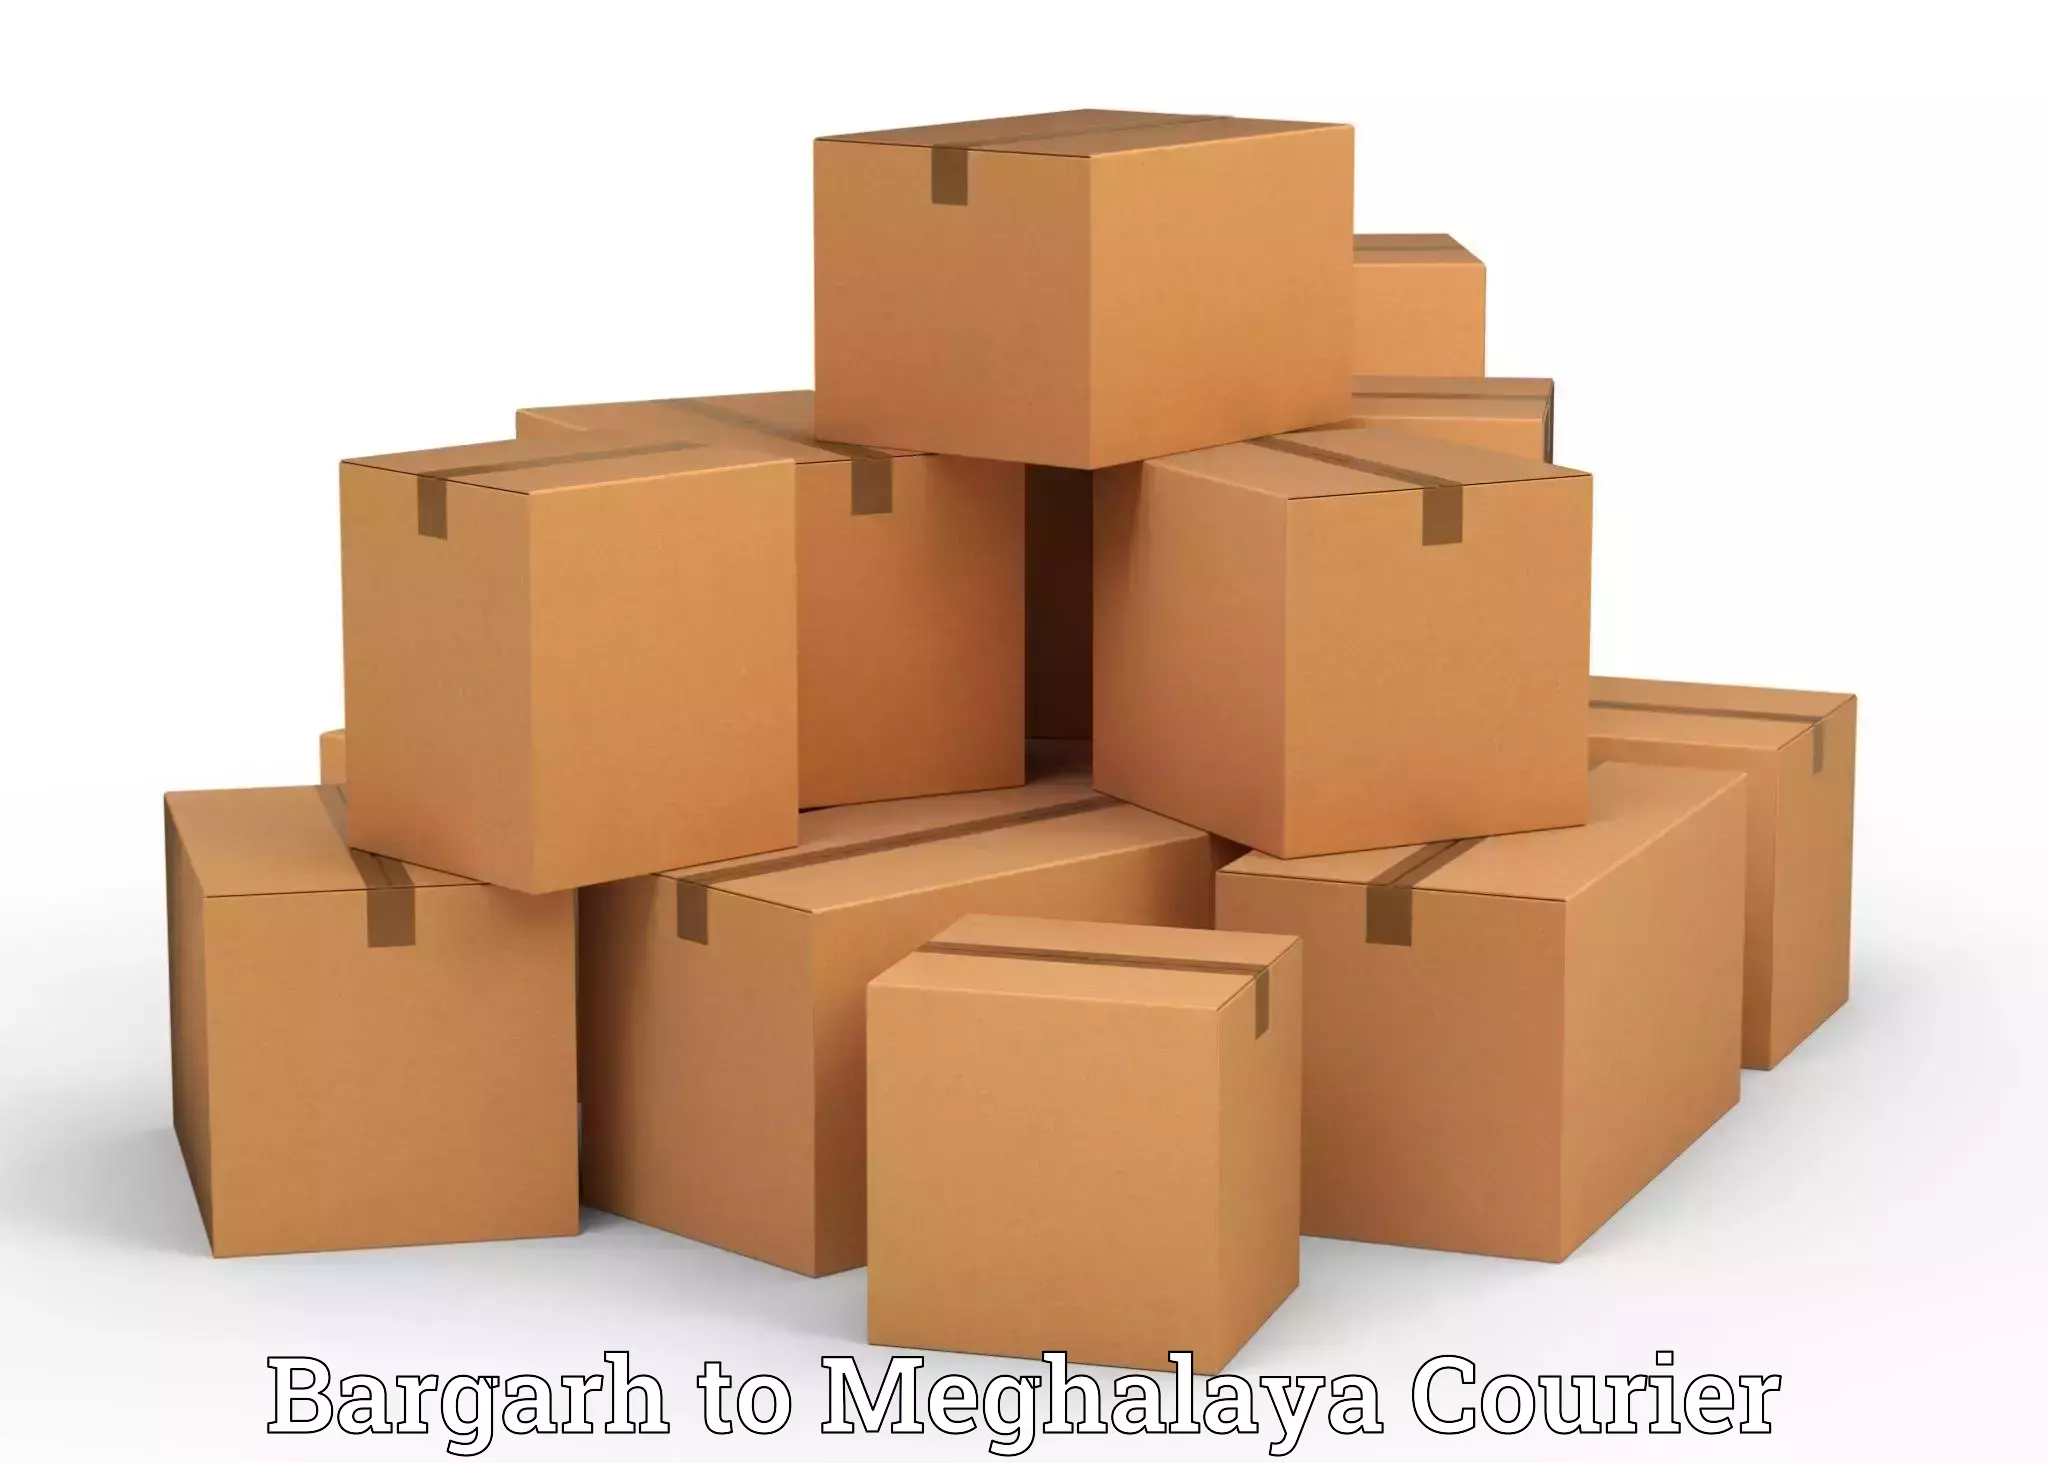 Efficient furniture transport Bargarh to Williamnagar